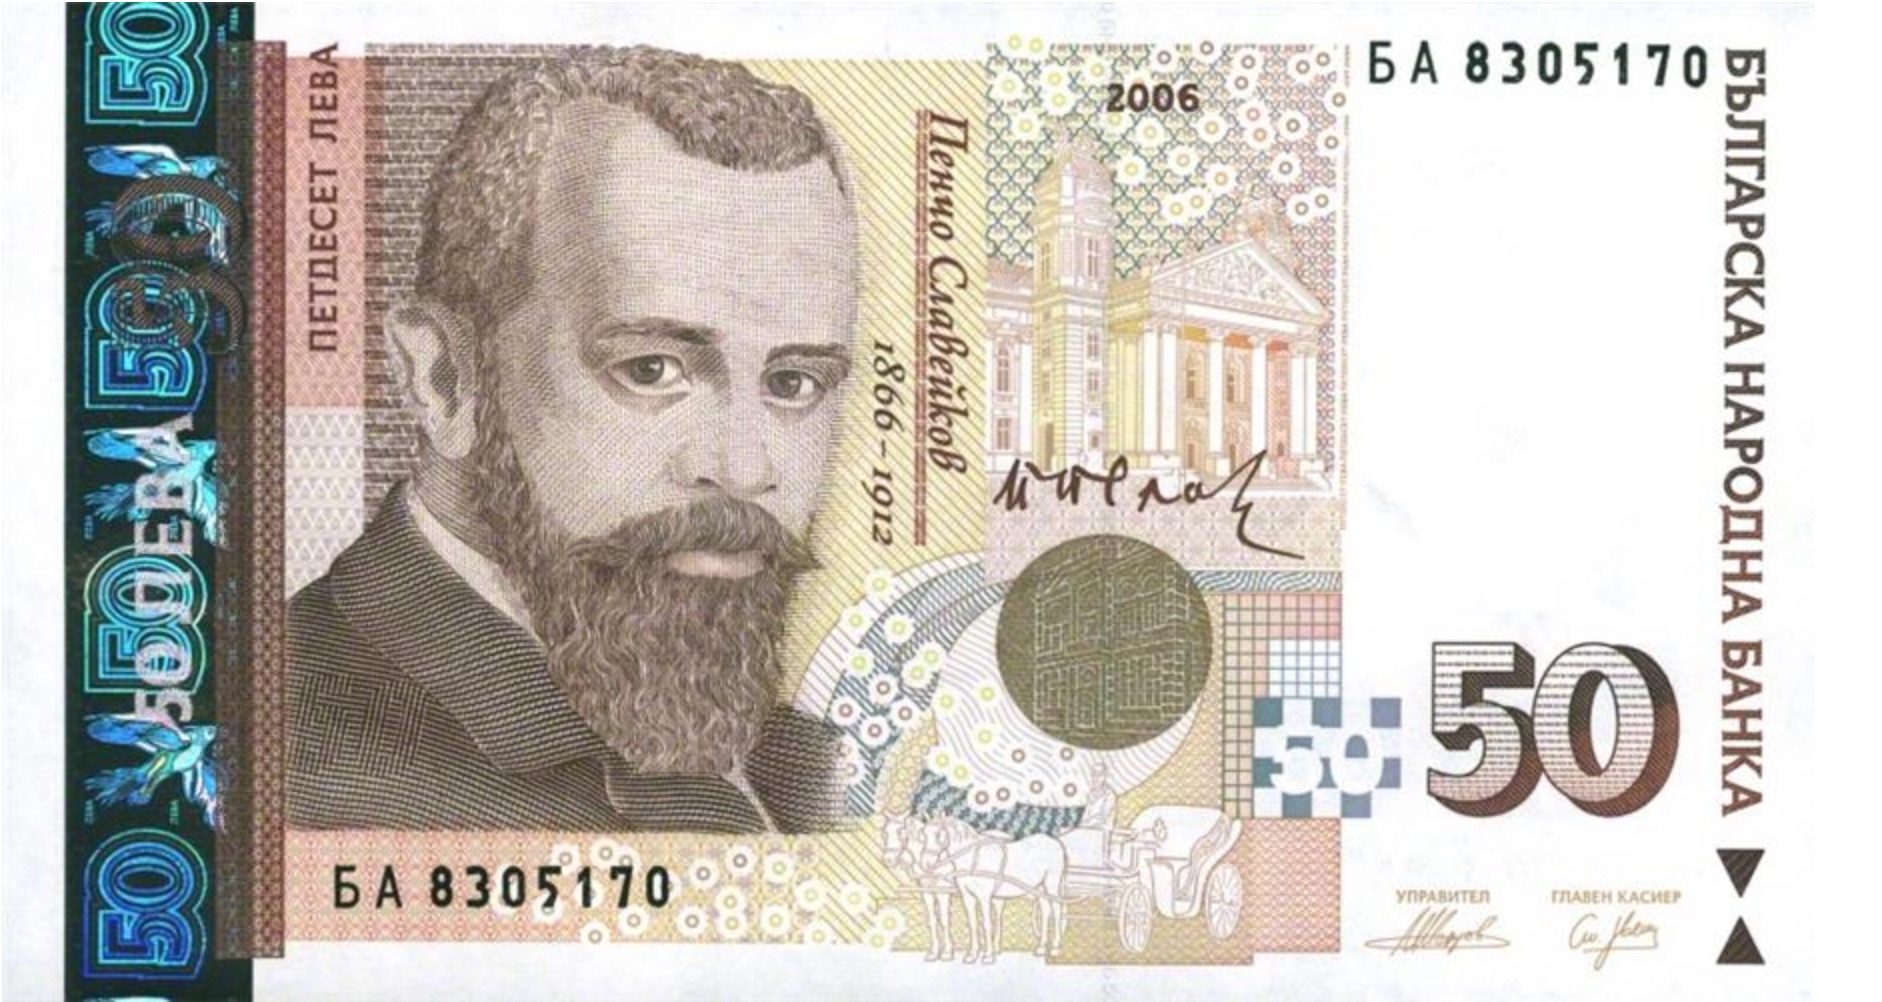 Bildergebnis für 50 leva banknote slaveykov